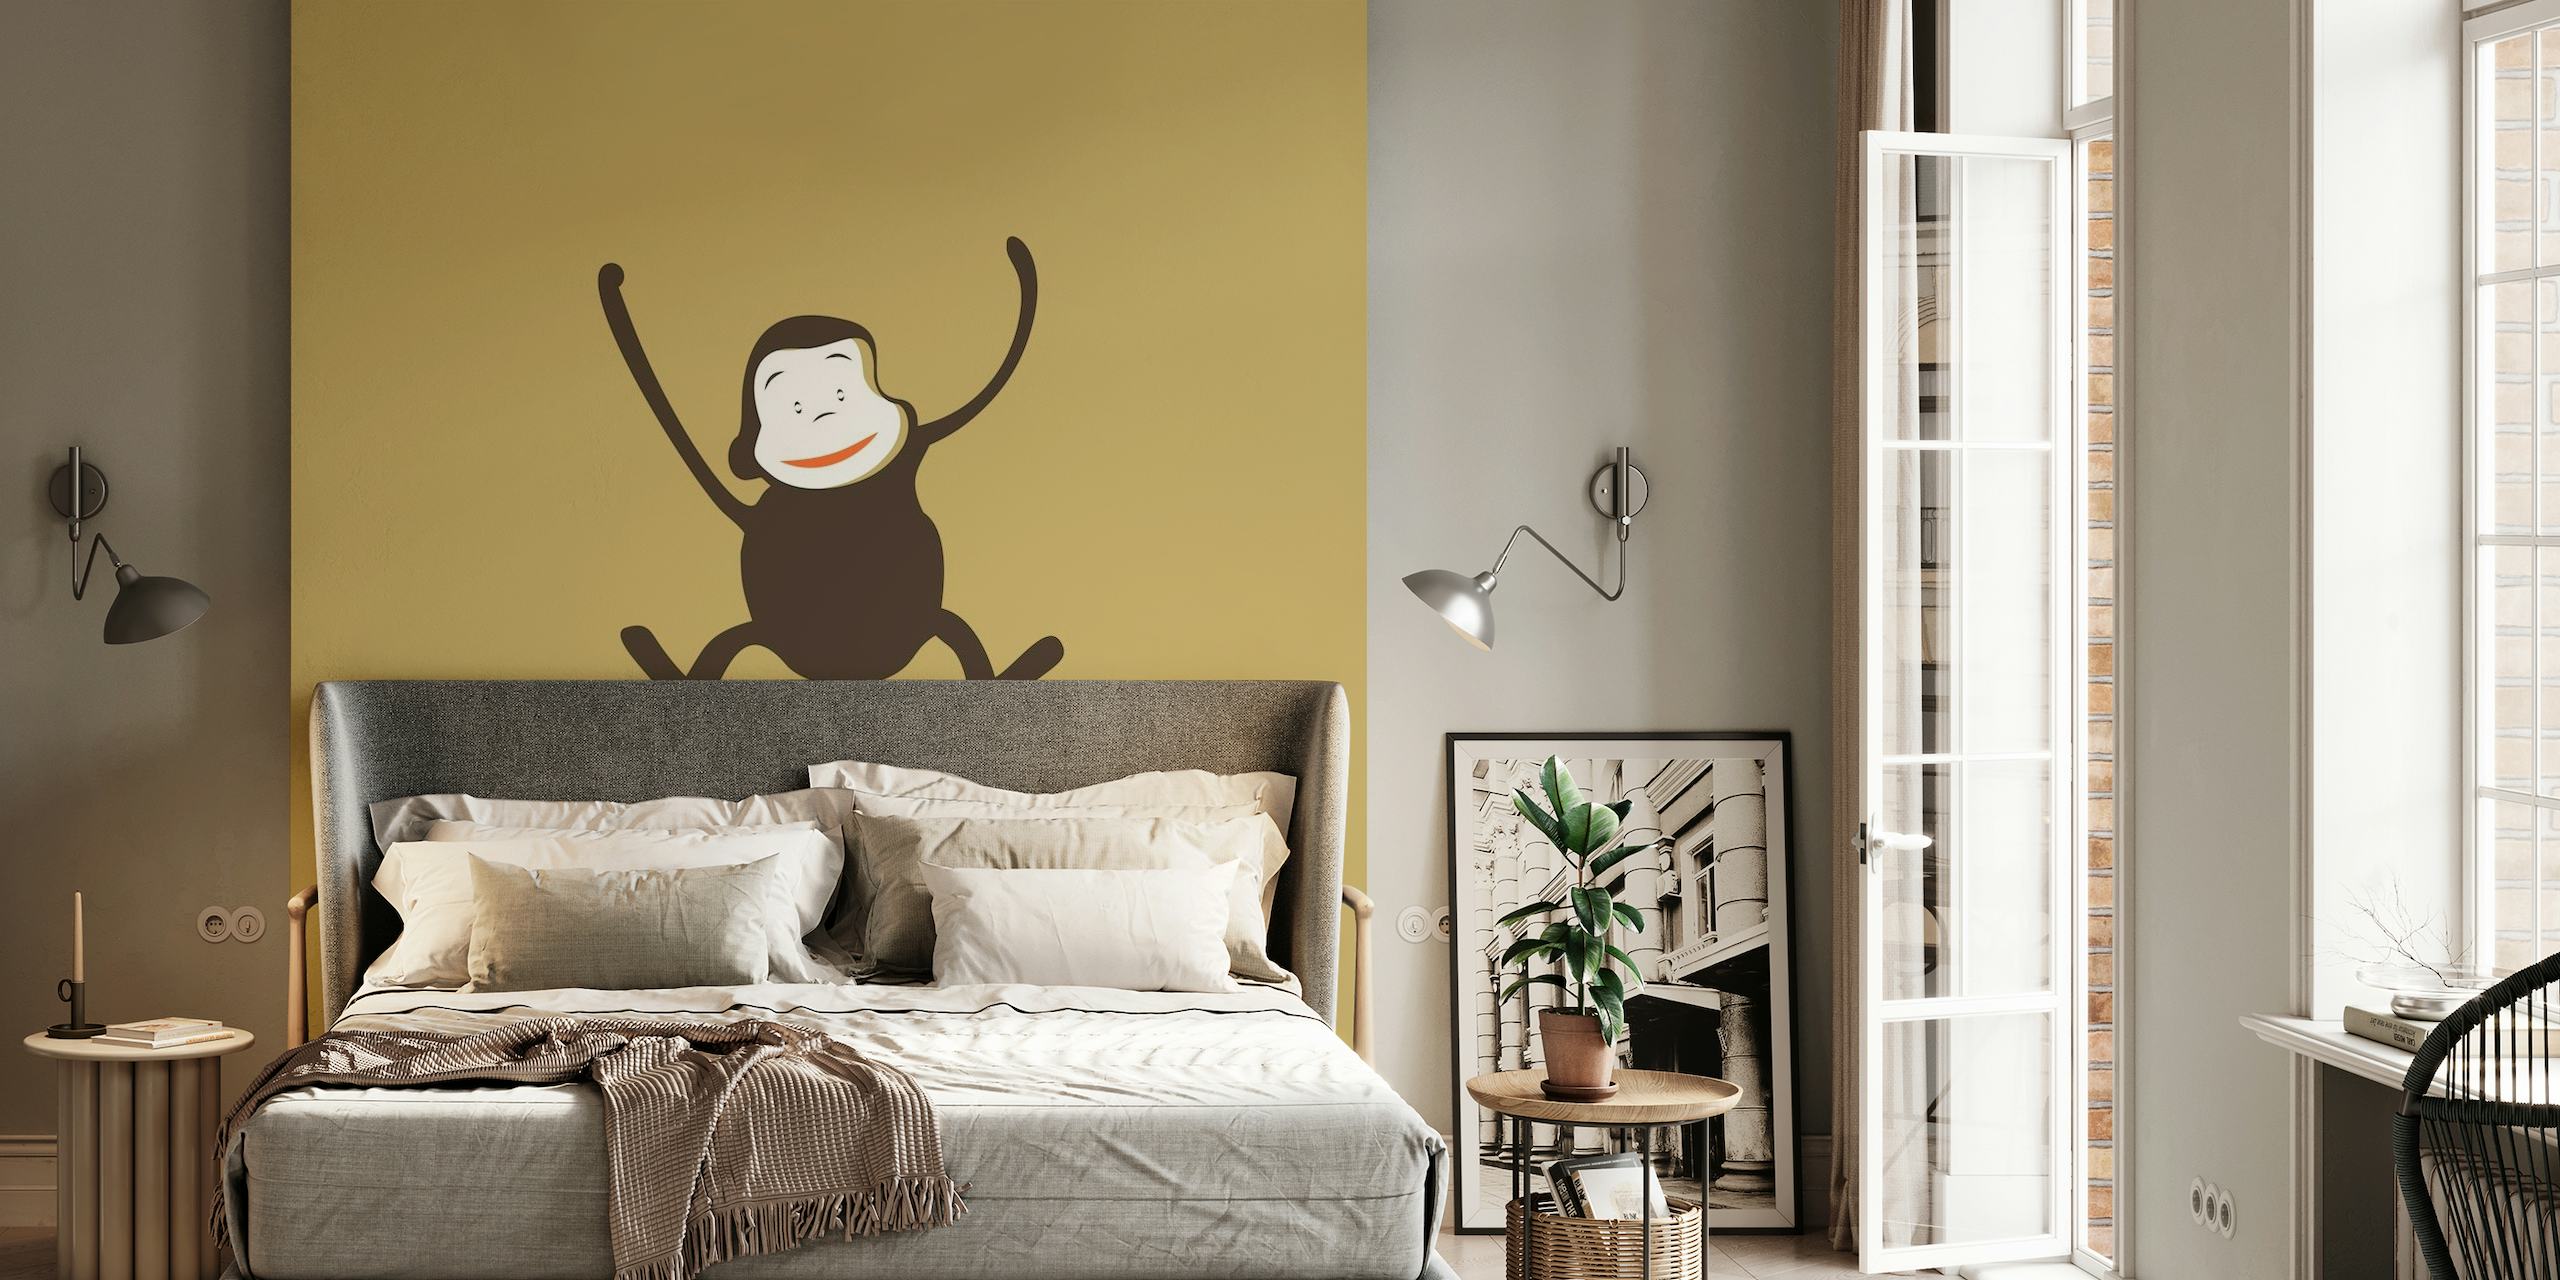 Ilustração de um macaco brincalhão em um fundo de fotomural vinílico marrom mocha